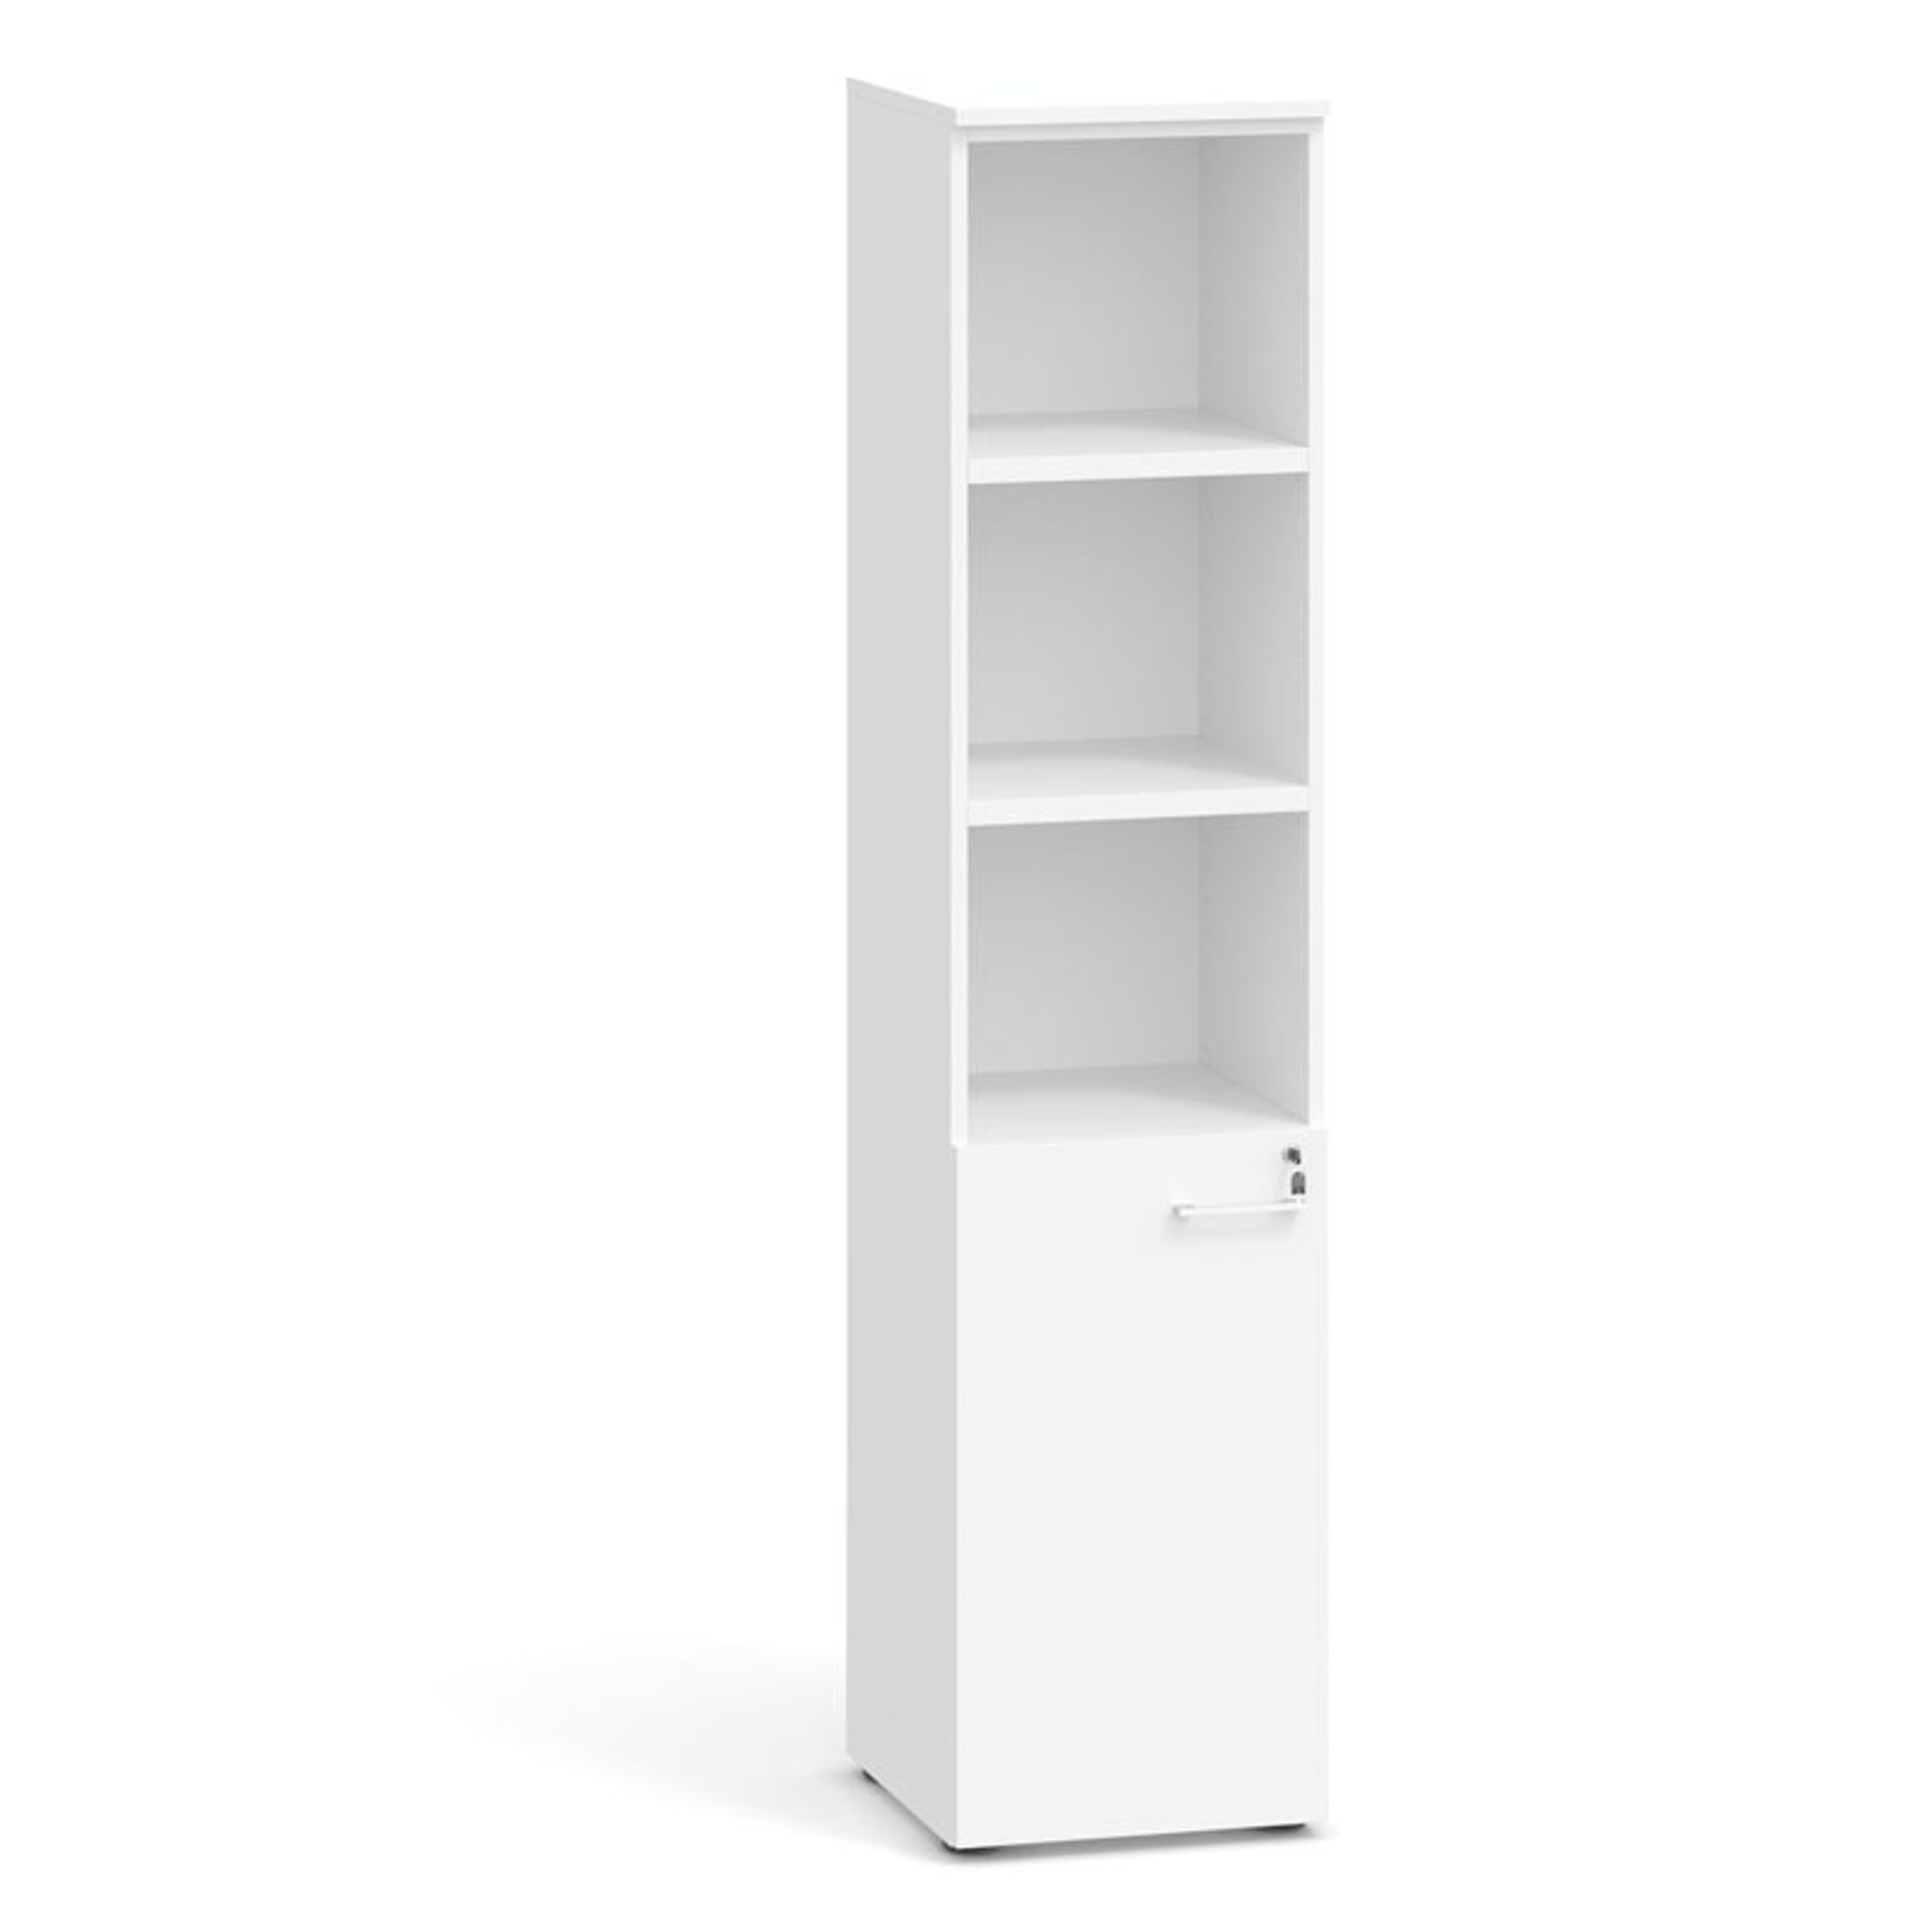 Kombinovaná kancelářská skříň PRIMO 2023, dveře na 2 patra, 1781 x 400 x 420 mm, bílá